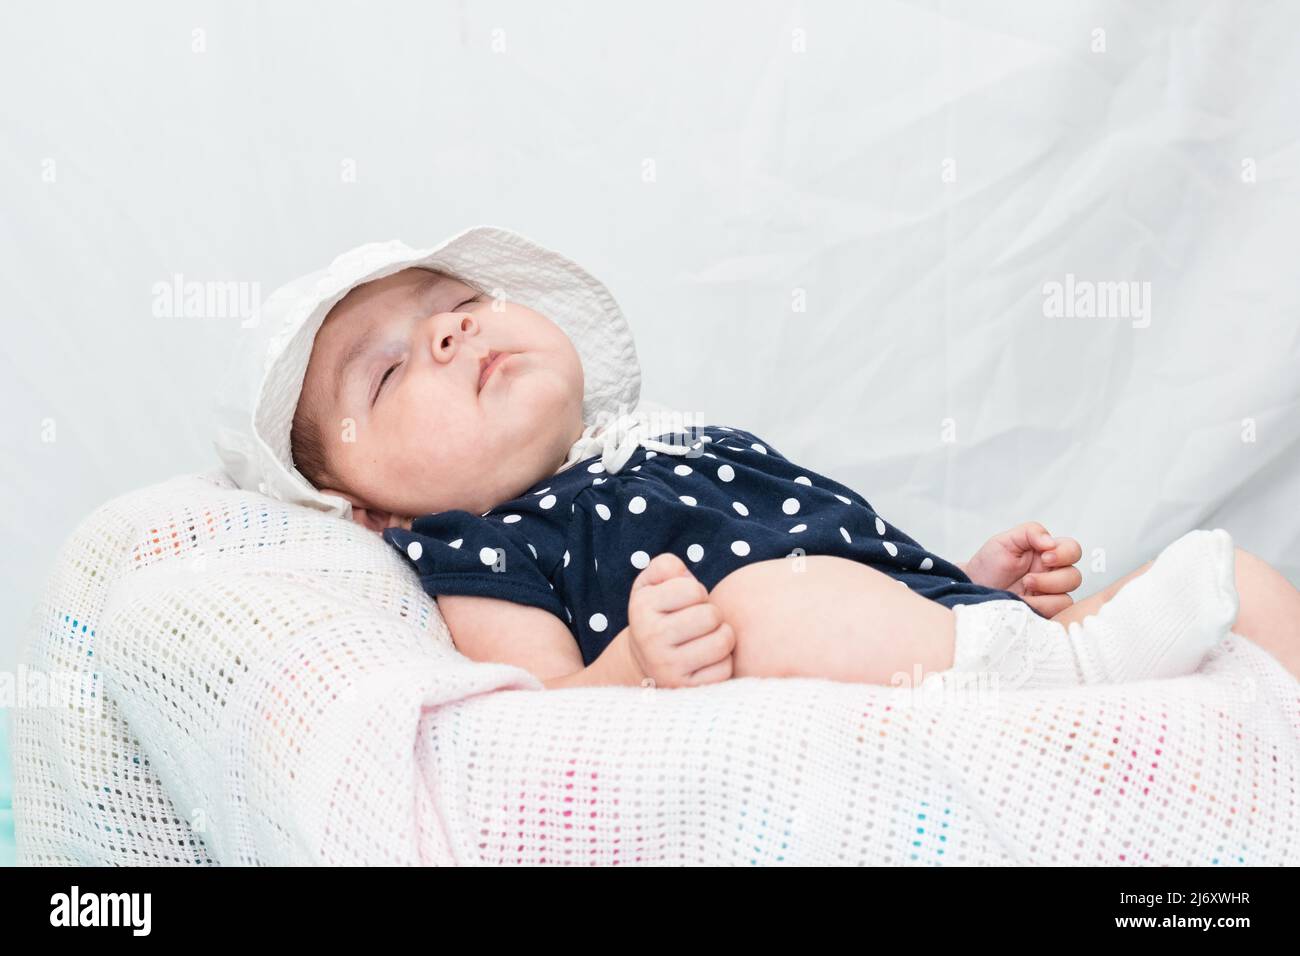 hermoso bebé caucásico durmiendo tranquilamente en una cuna pequeña, vestida con una mancha azul y un sombrero blanco. sobre un fondo blanco con espacio para copiar texto Foto de stock